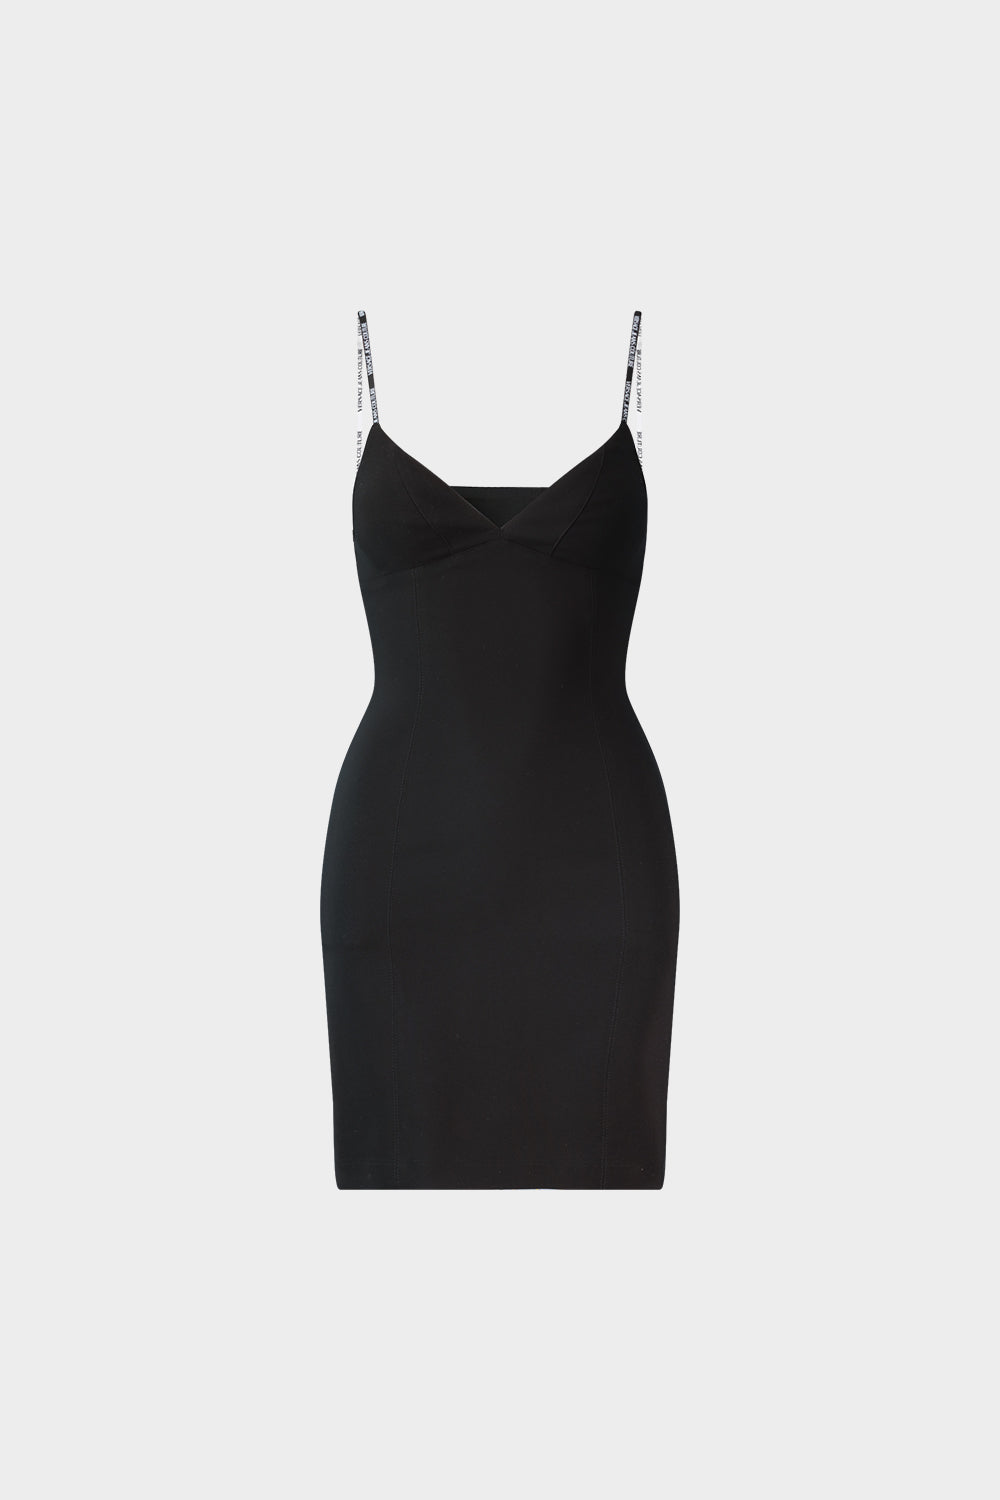 שמלה קצרה לנשים כתפיות ספגטי VERSACE Vendome online | ונדום .